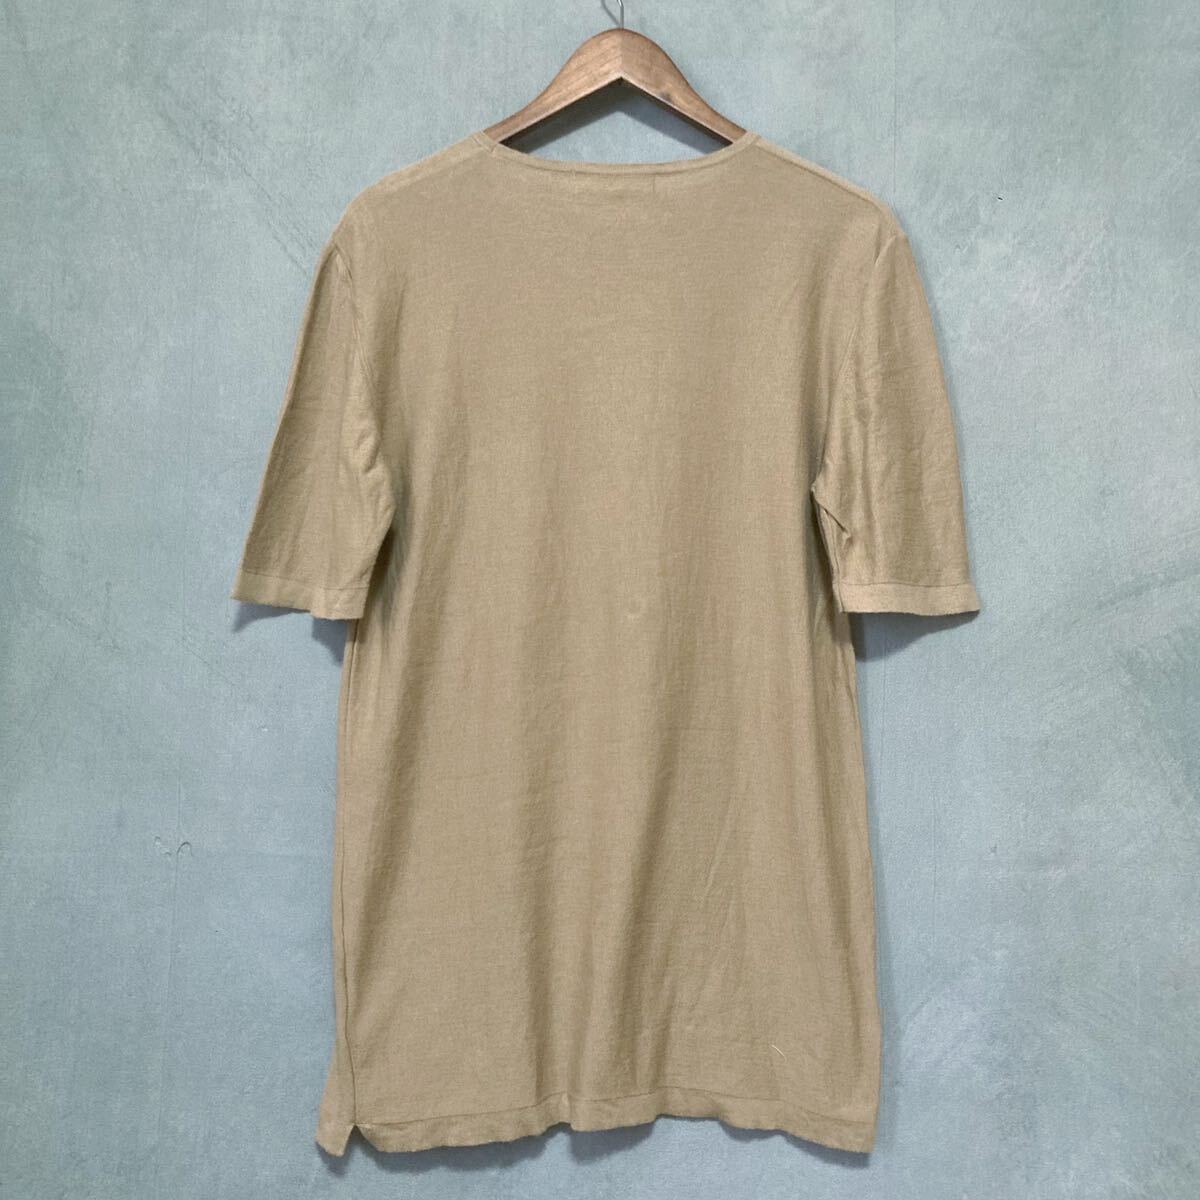 イタリア製 BAFY バフィー BEAMS 別注 コットン サマーニット 半袖 Tシャツ カットソー size.不明(L程度) ベージュ ブラウン_画像5